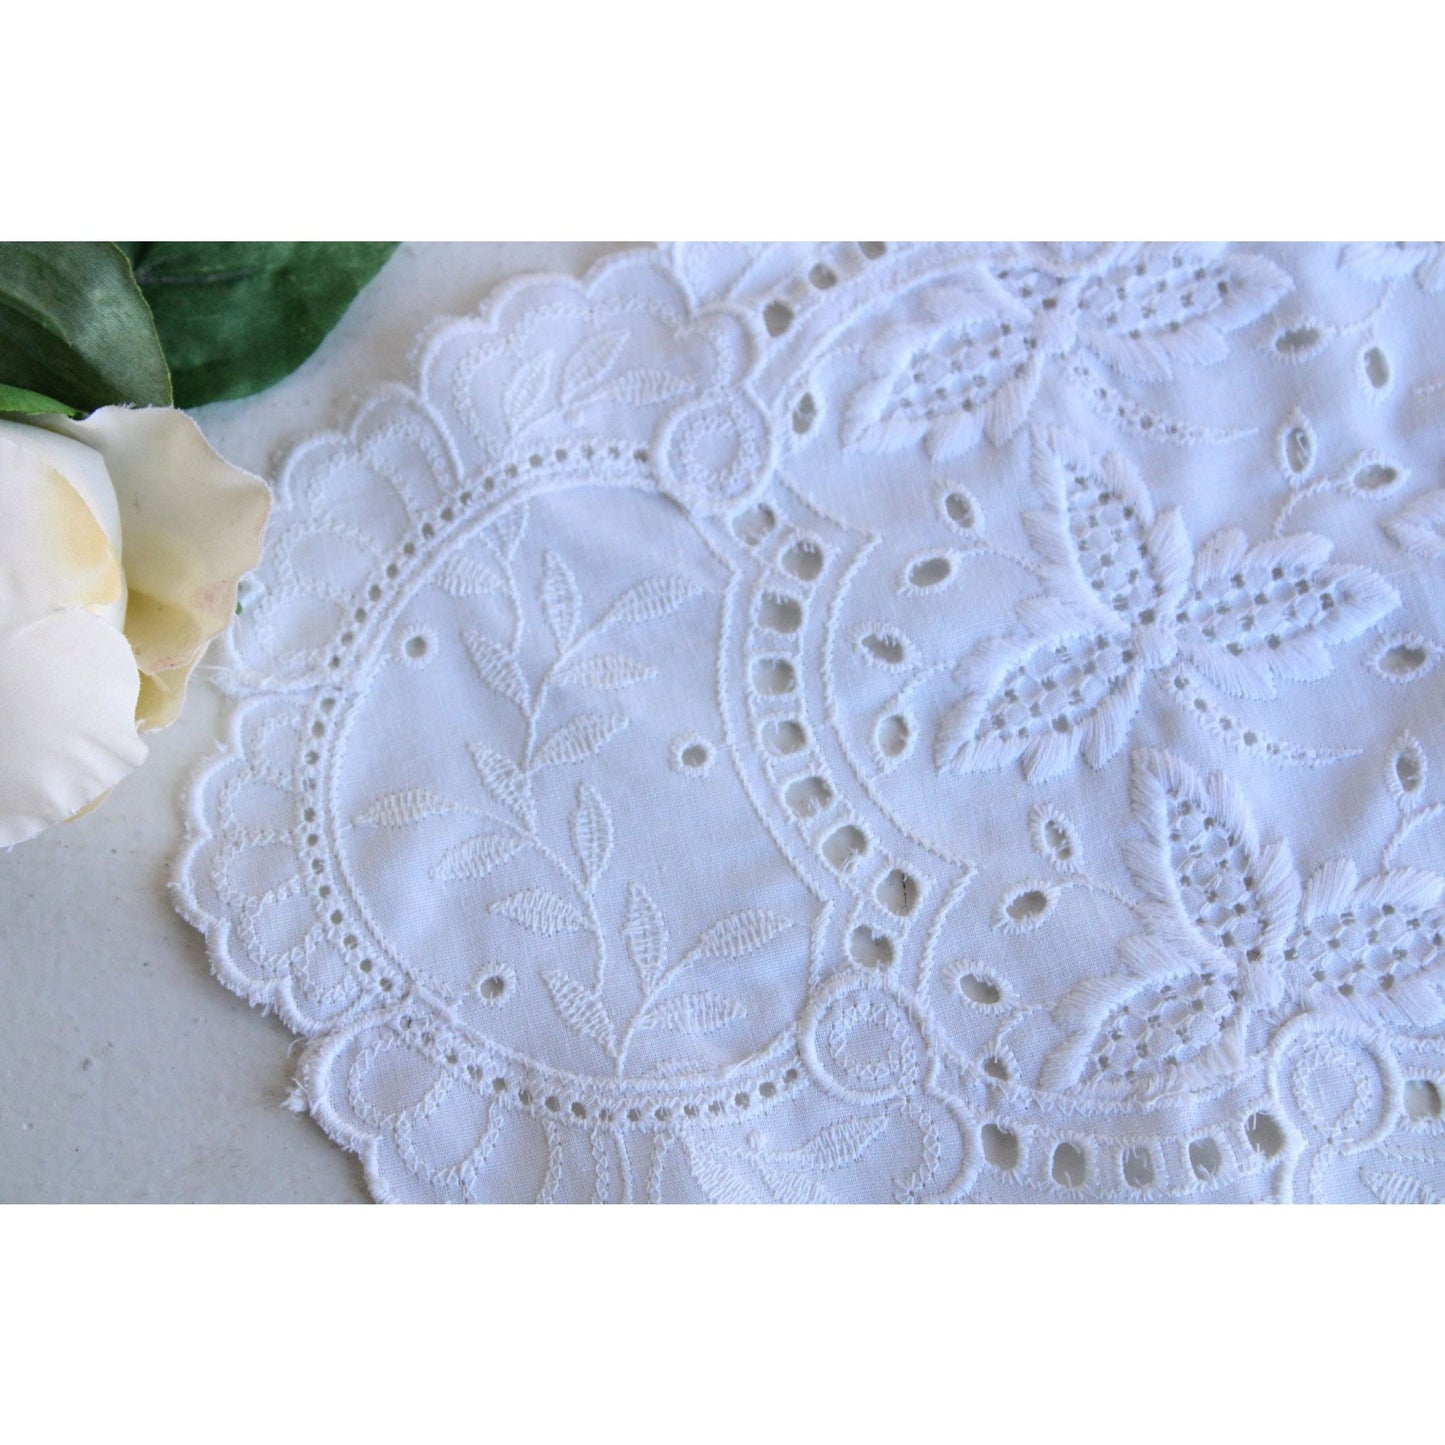 Vintage Embroidered White Cotton Doily